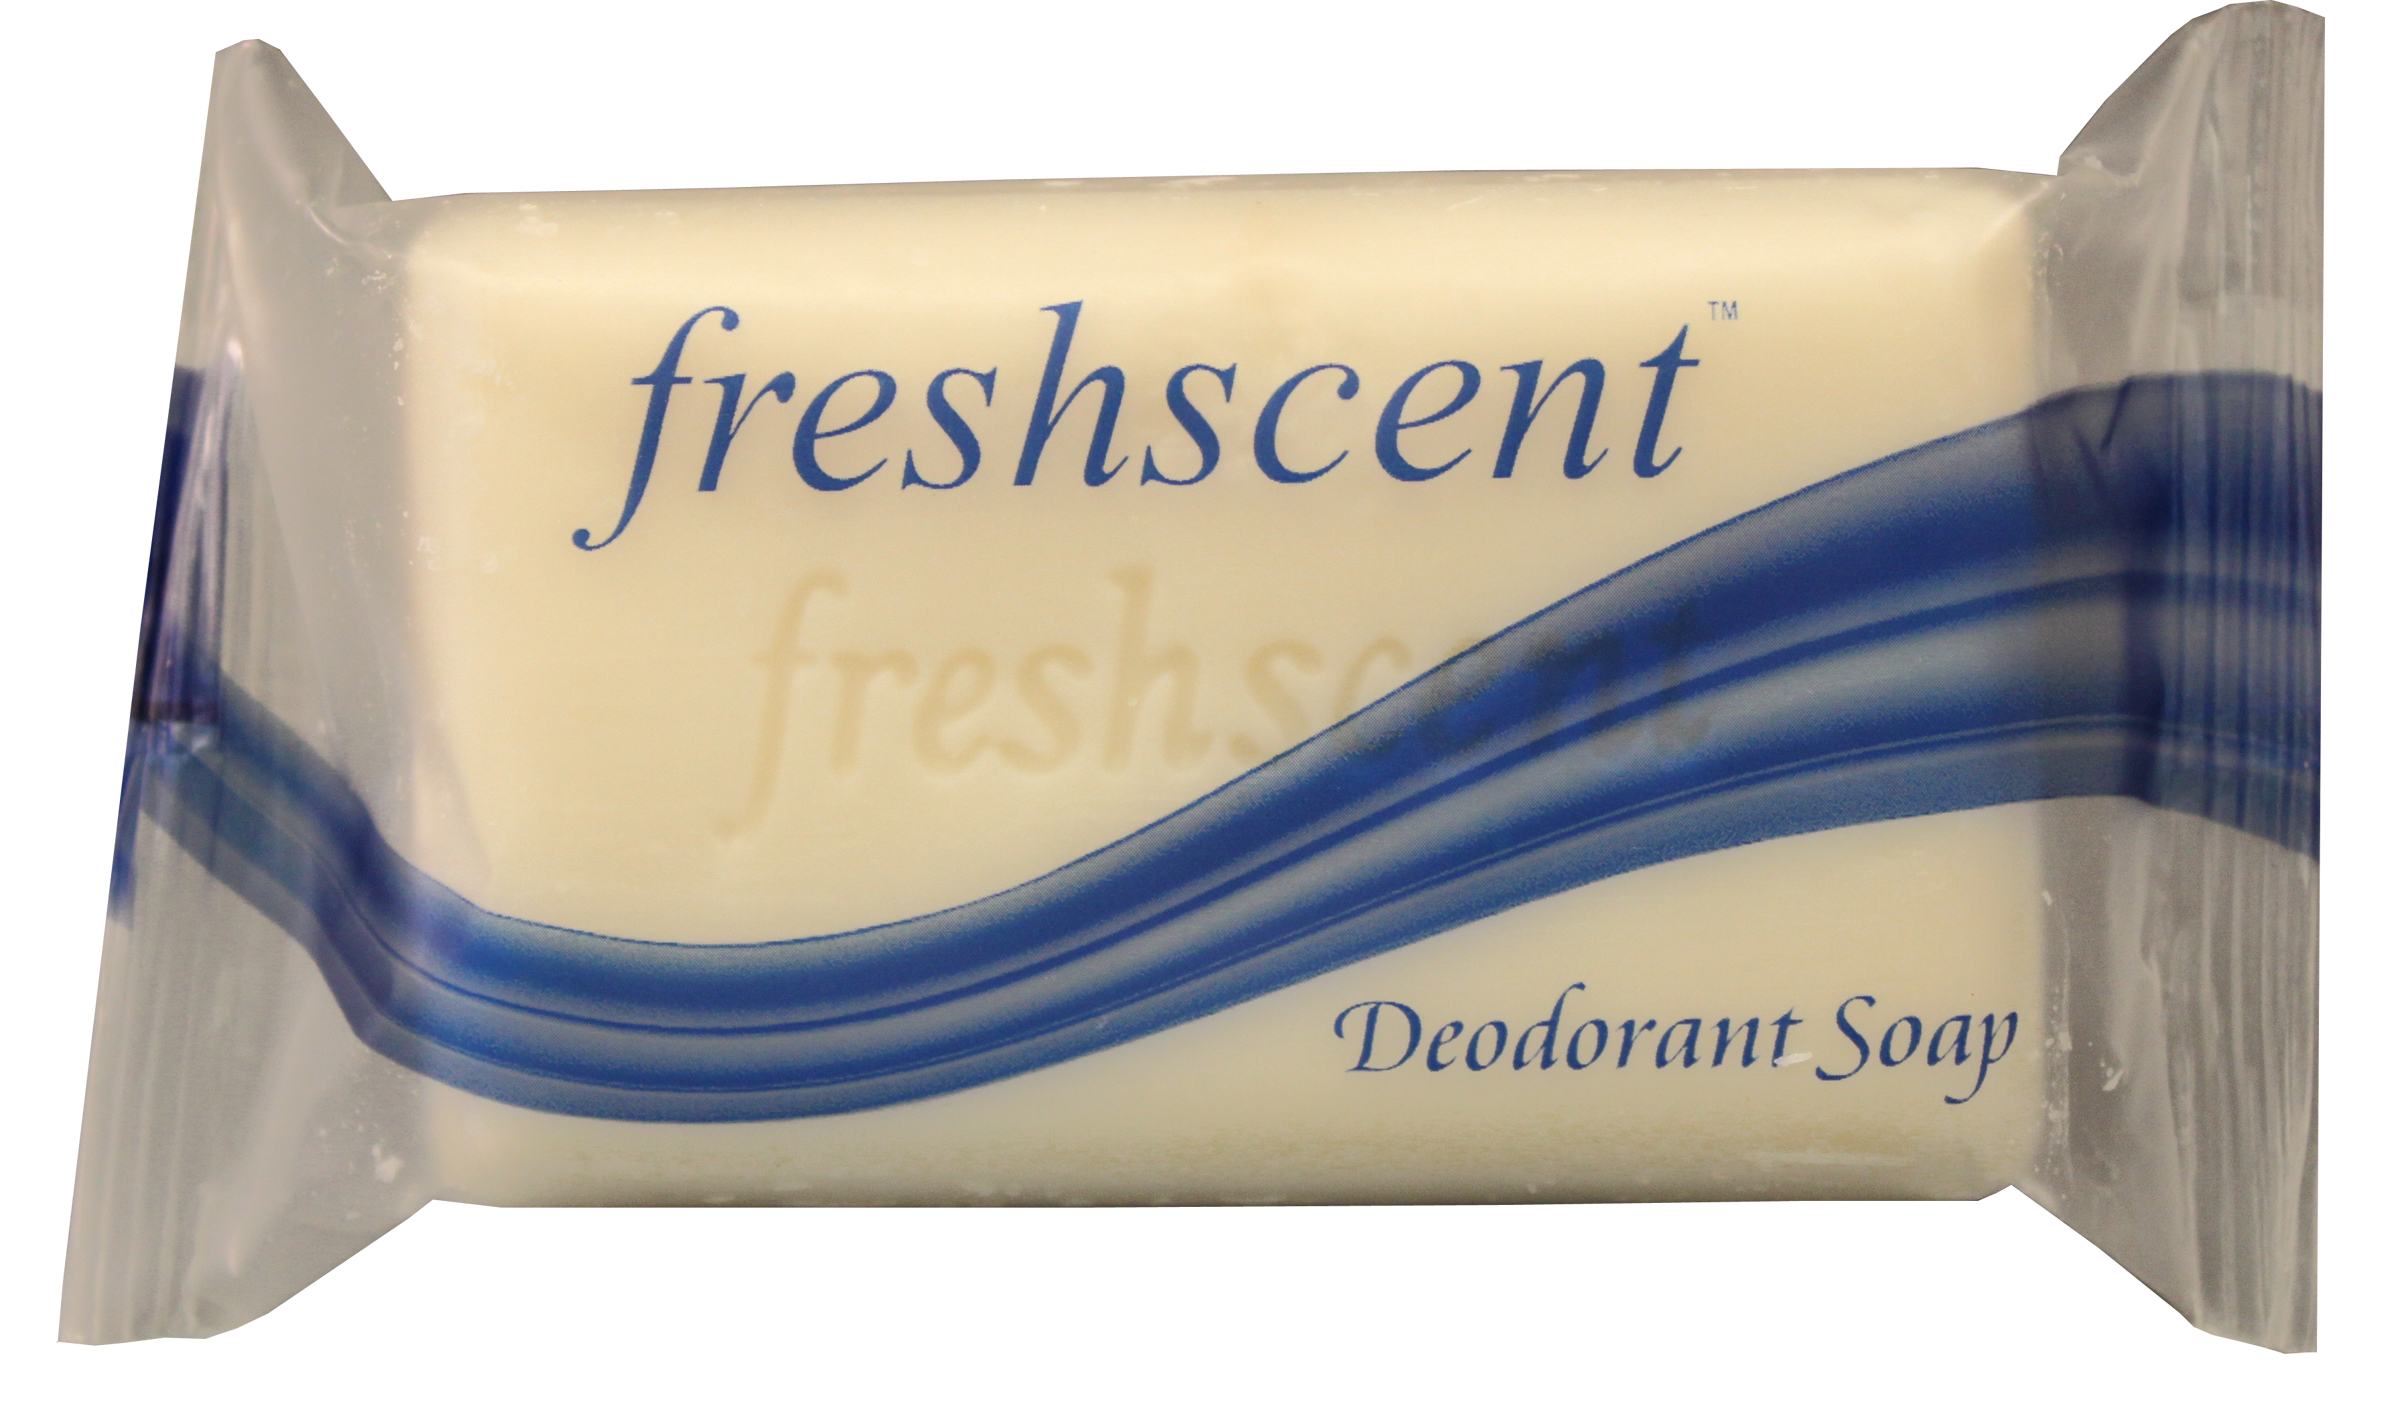 Freshscent 3 oz. Deodorant Soap